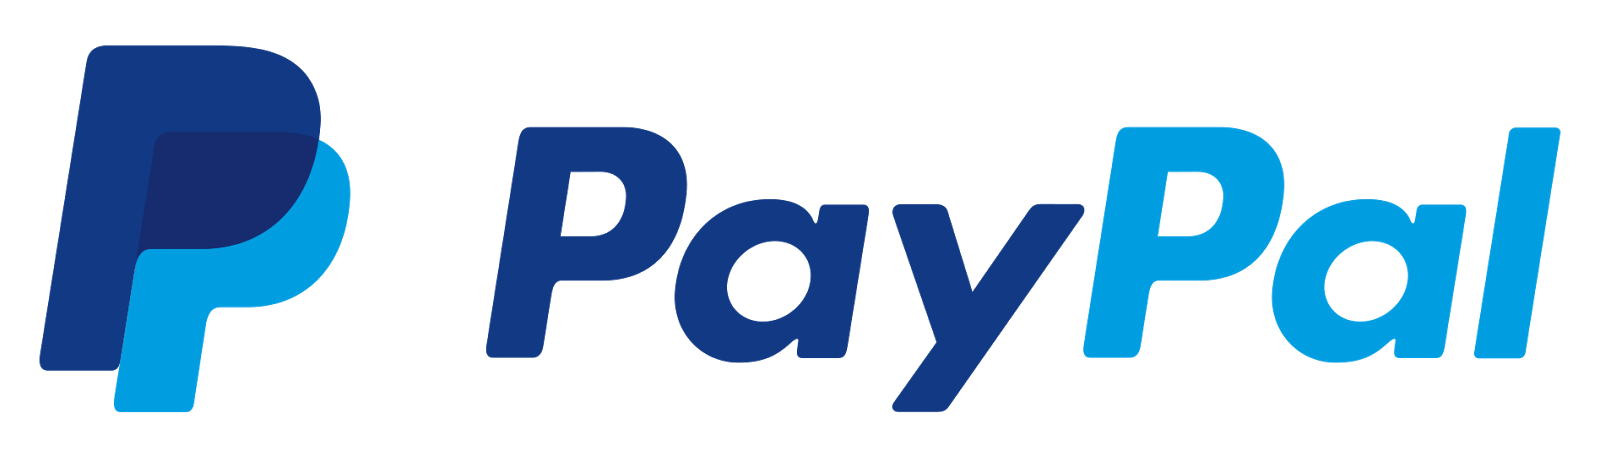 pago paypal